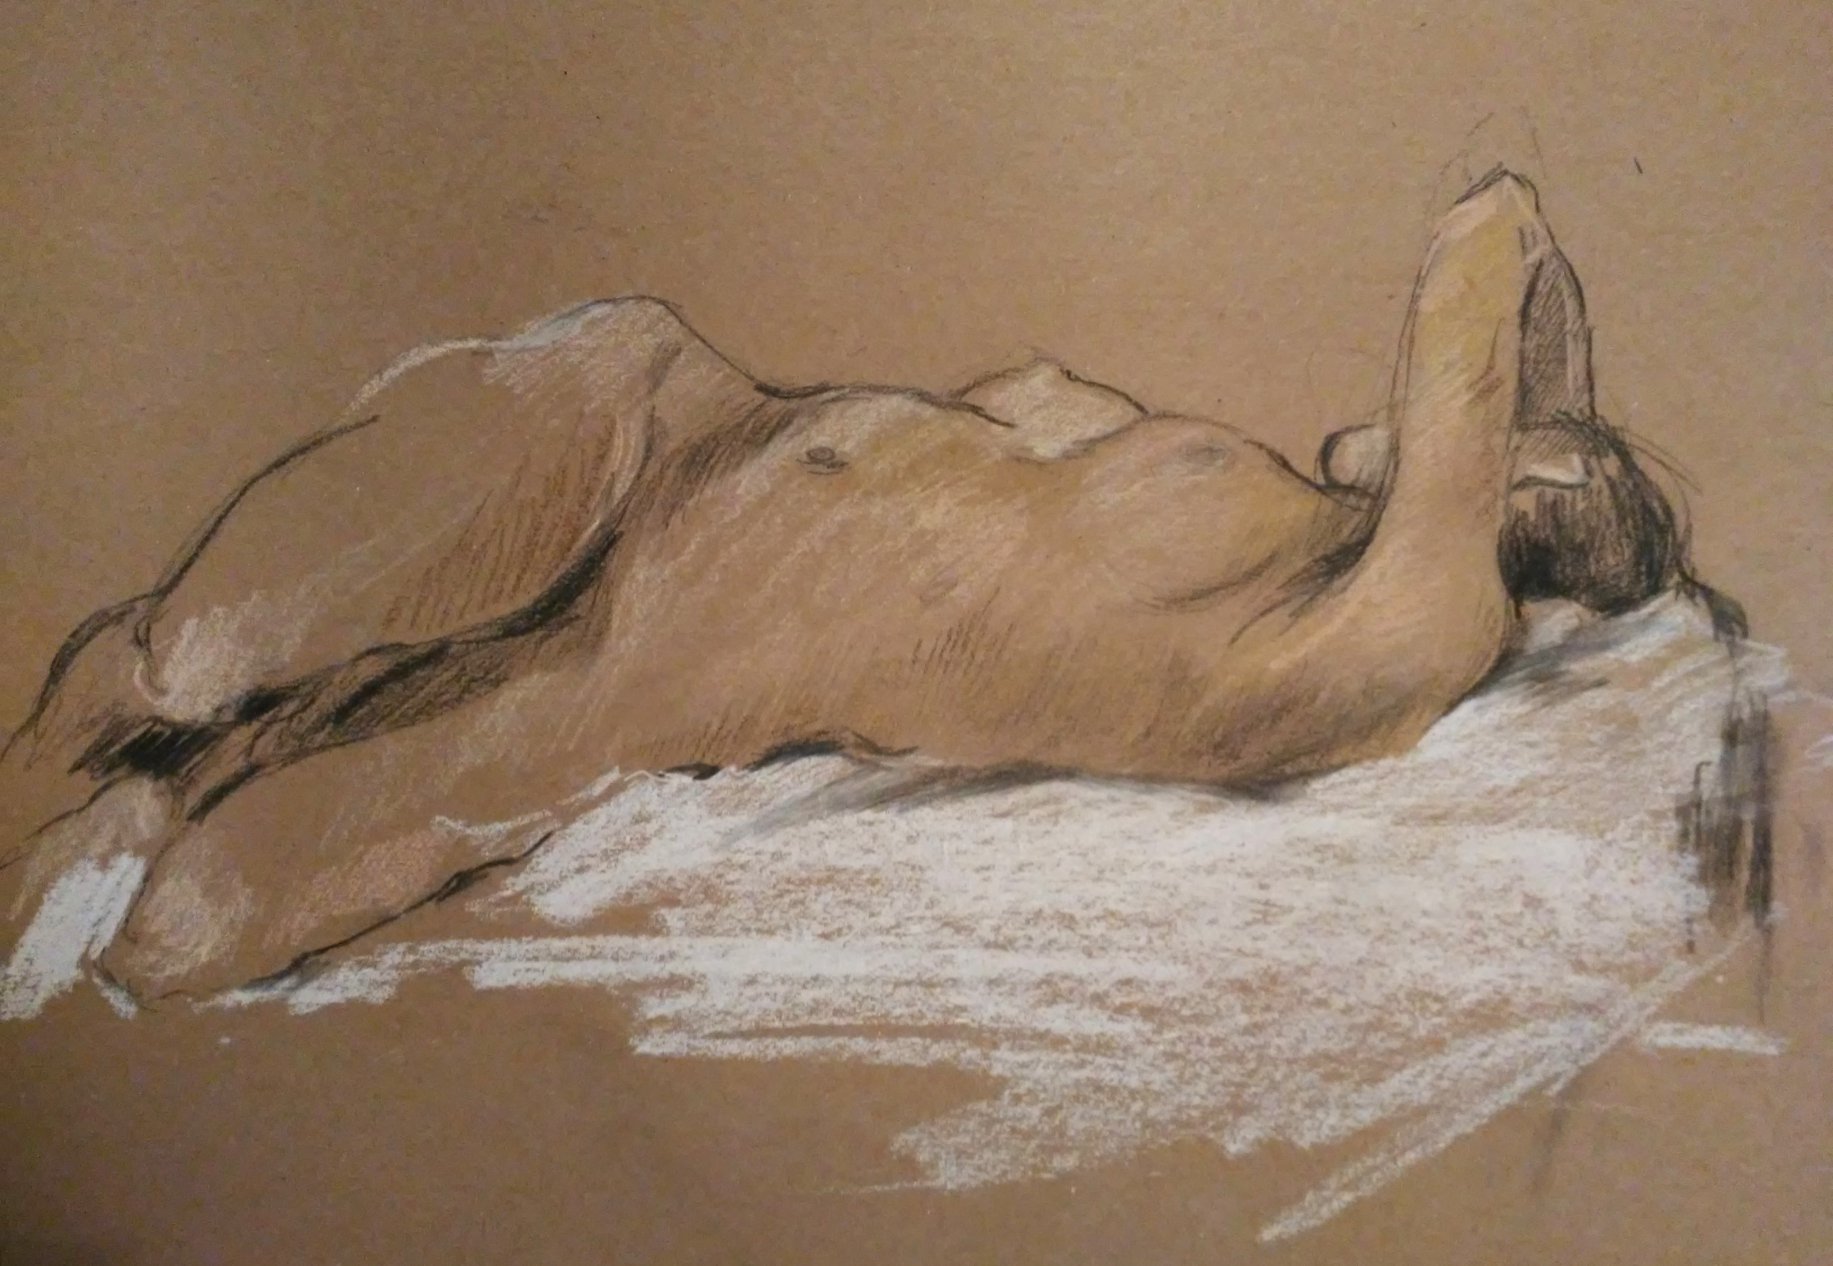 Soule of Body (Nudes Drawings)